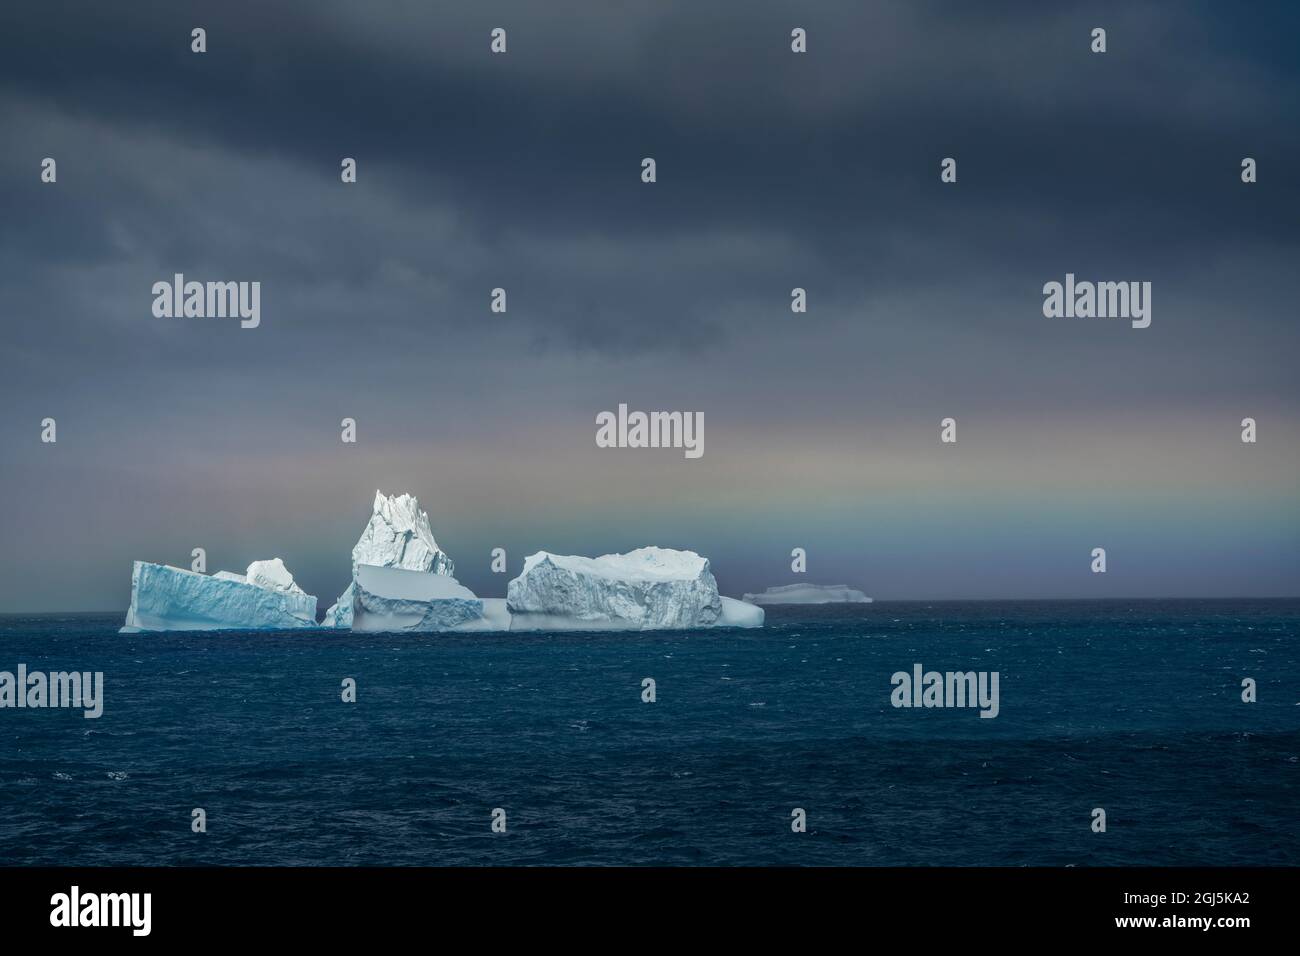 Antarktis, Südgeorgien. Horizontaler Regenbogen und Eisberge. Kredit wie: Don Grall / Jaynes Gallery / DanitaDelimont.com Stockfoto